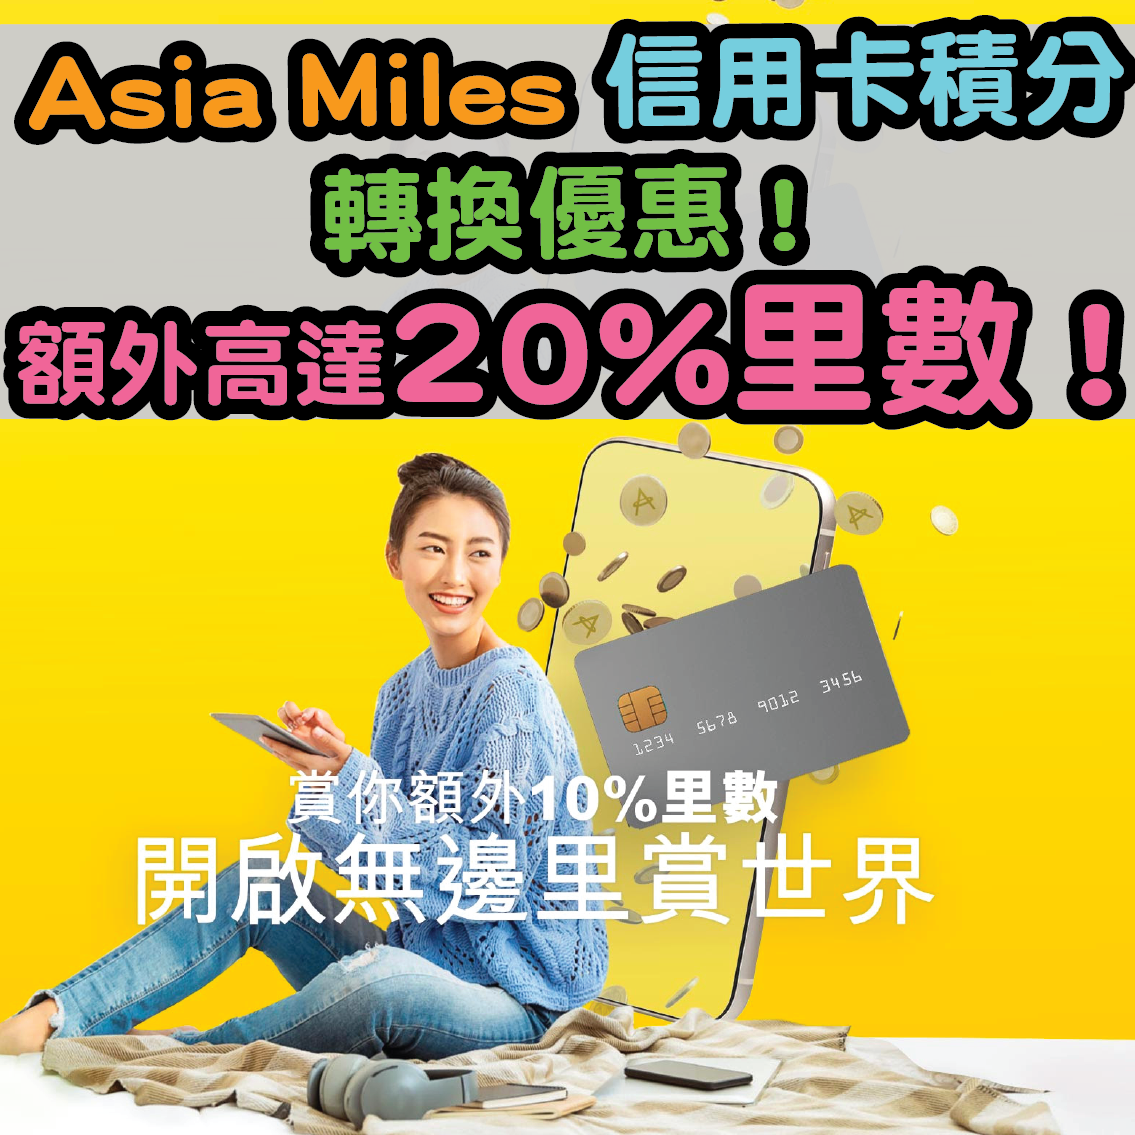 【Asia Miles信用卡積分轉換優惠】有額外高達20%里數優惠！記得要喺2021年11月30日或前登記同轉換里數先有呀！